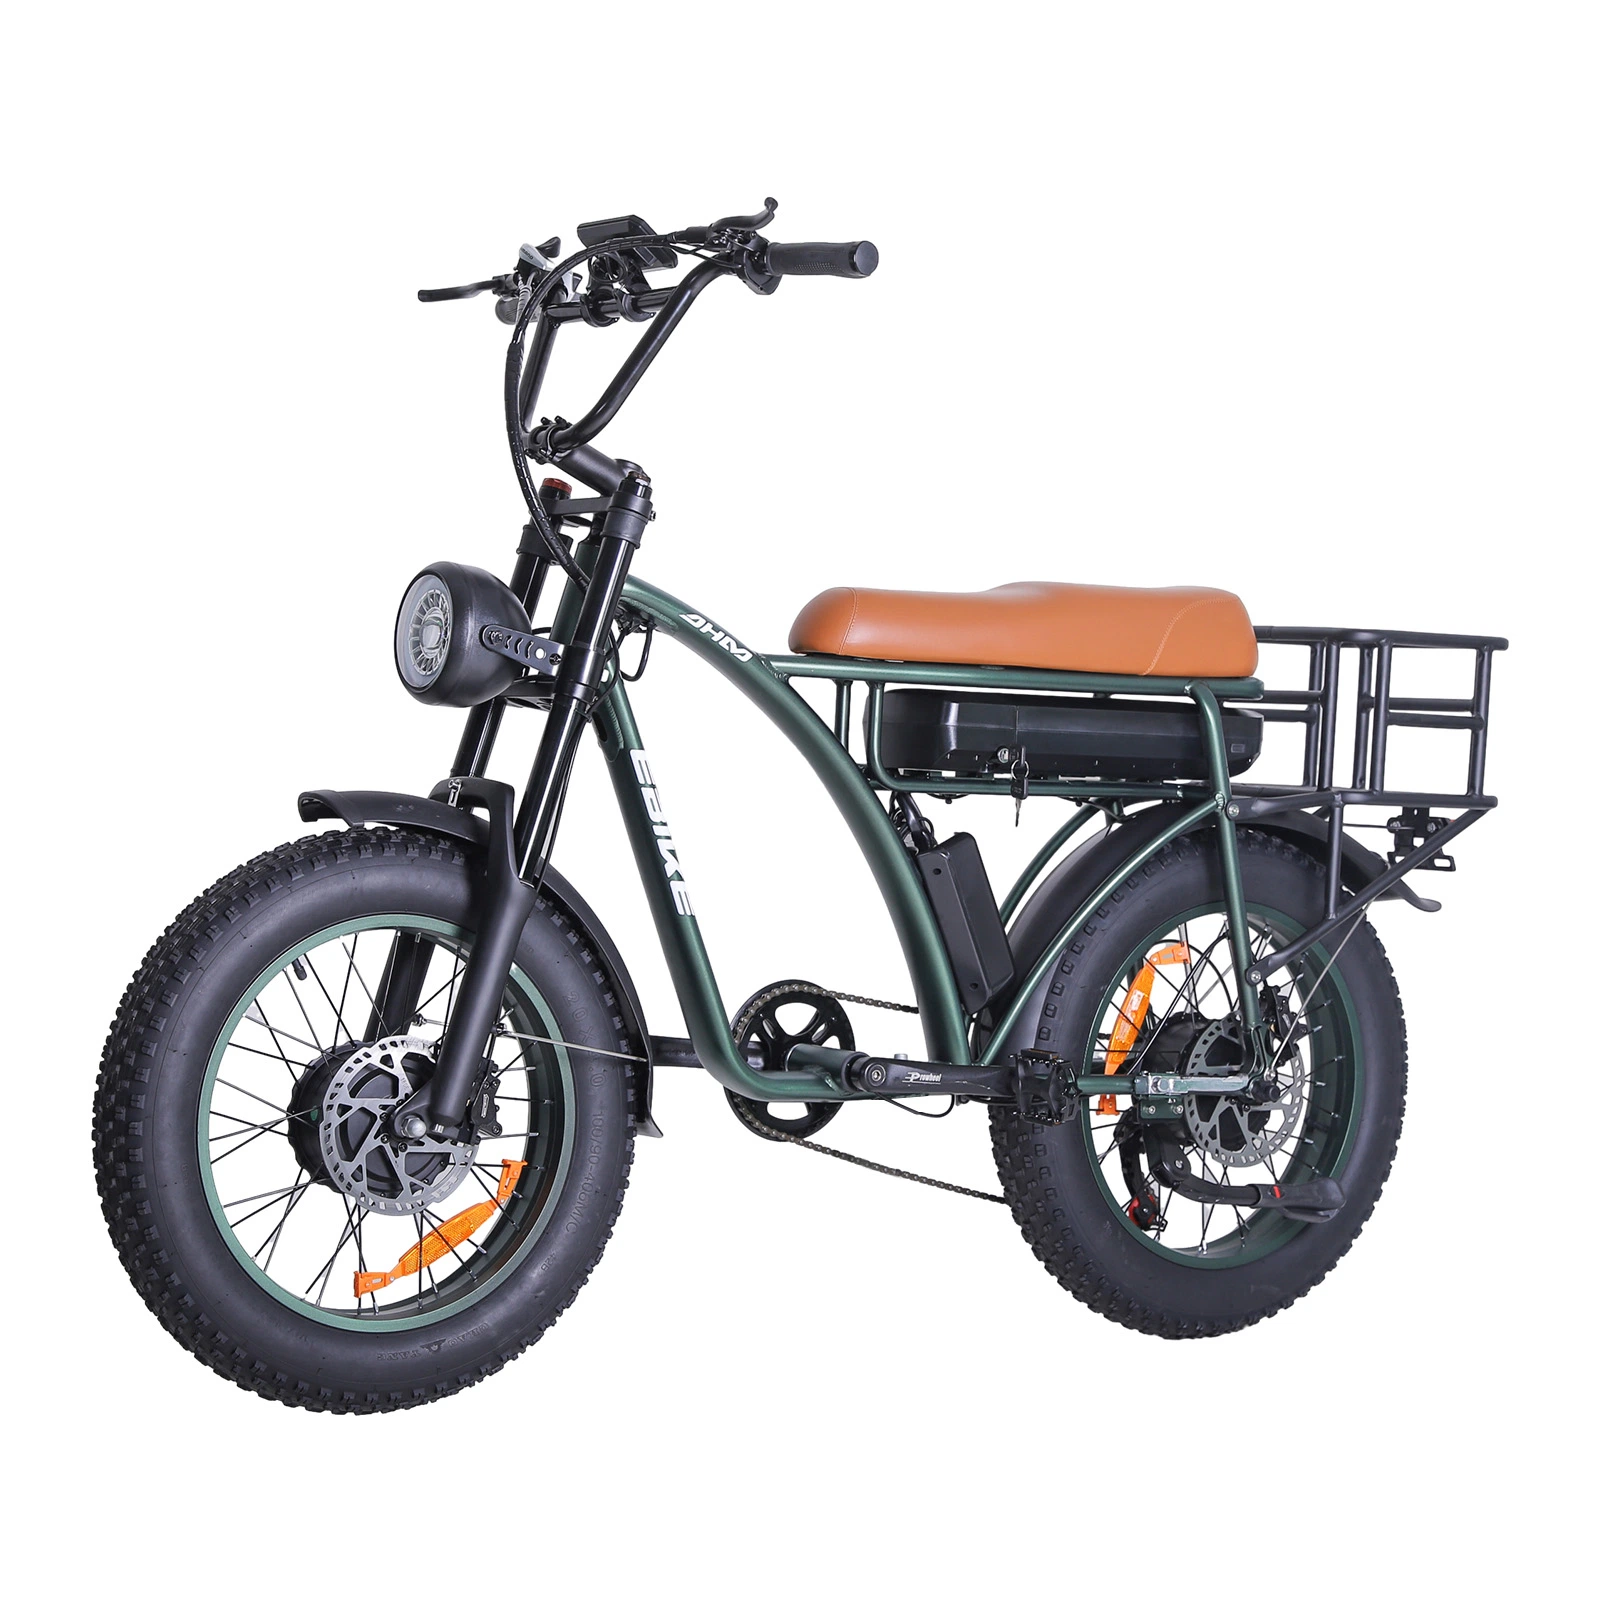 Vente en gros de vélo électrique modèle Ebike Fat tire vélo électrique Moteur électrique à double moyeu de vélo 1 000 W graisse électrique saleté de vélo Vélo